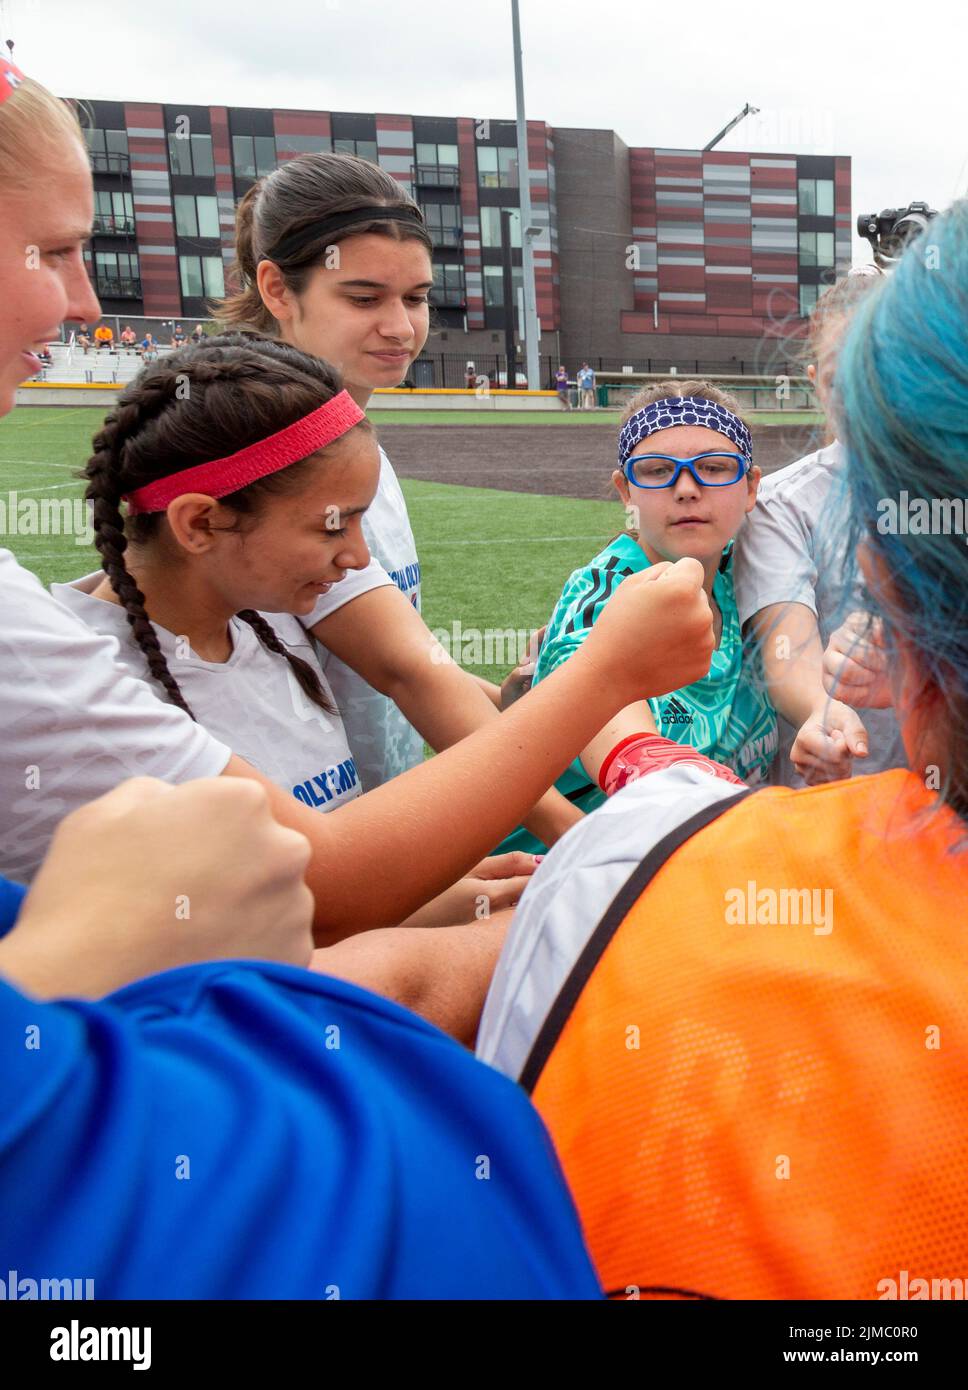 Detroit, Michigan - i giocatori della squadra femminile degli Stati Uniti nel torneo Special Olympics Unified Cup Football (calcio) si accudono prima del loro manto Foto Stock